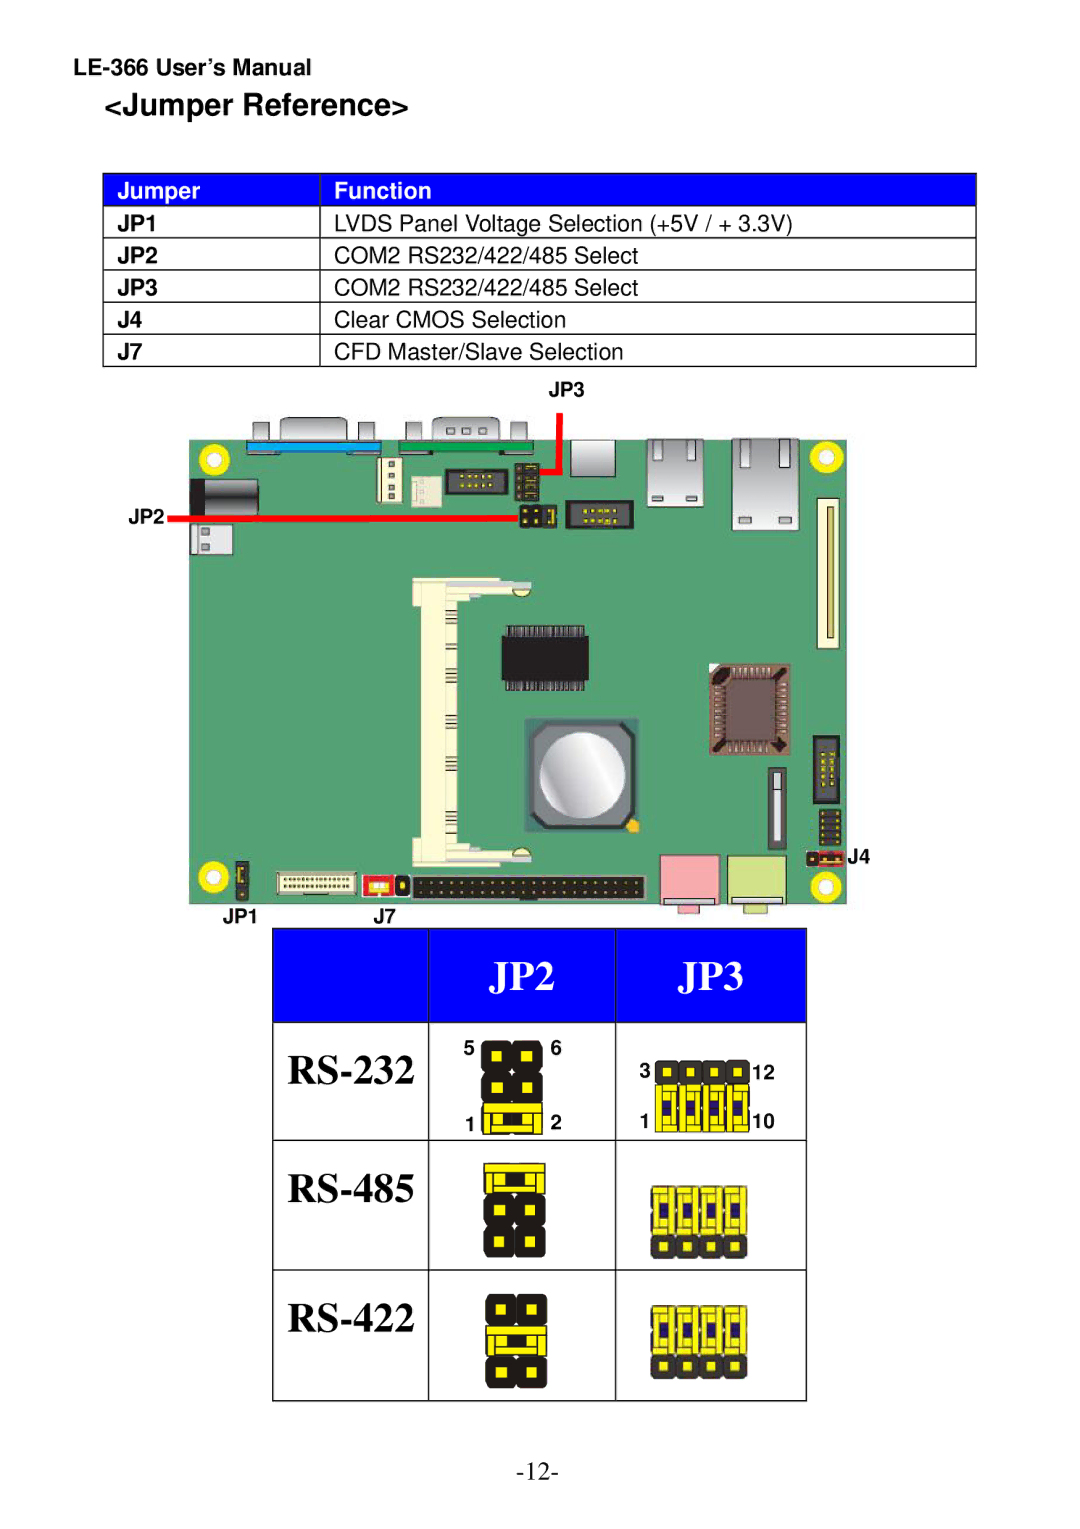 AMD LE-366 user manual JP2 JP3, Jumper Reference 